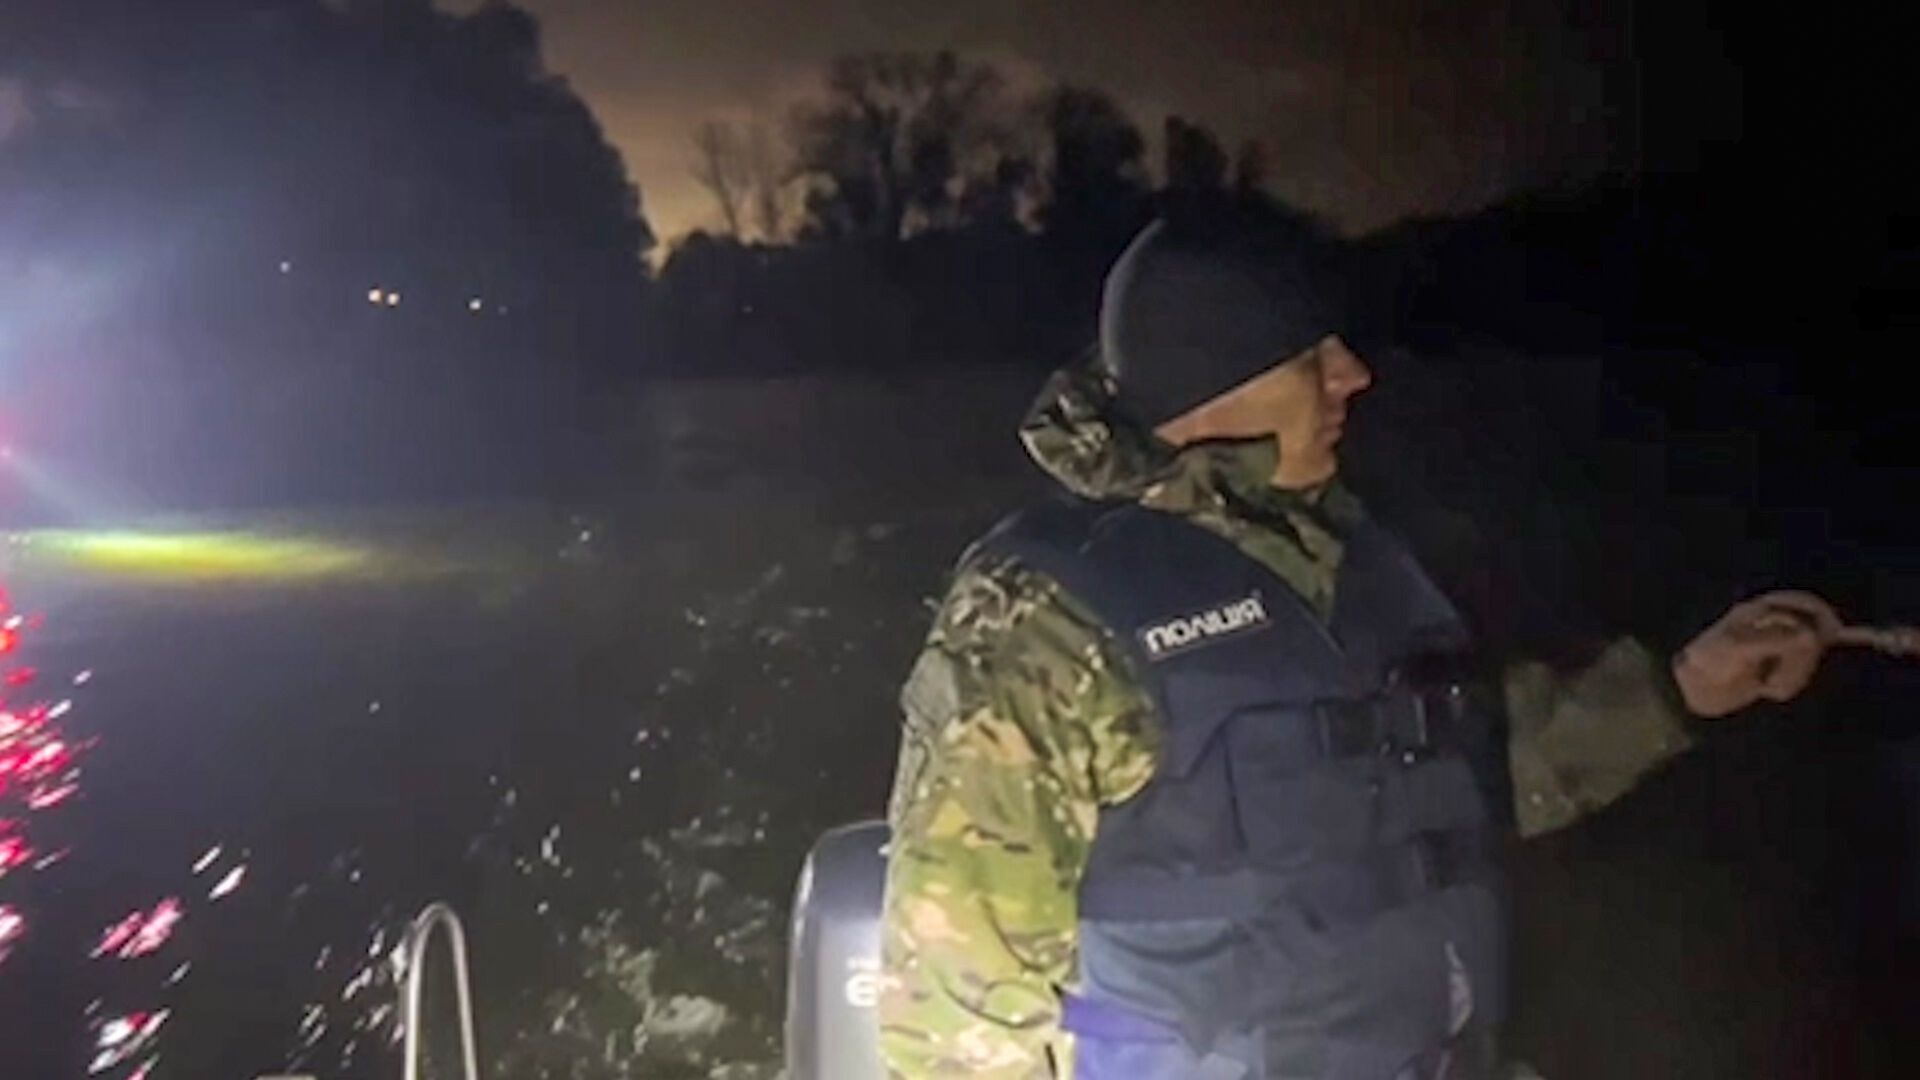 Piorun uderzył w kajak w regionie Połtawy: trwają poszukiwania nastolatka, który zaginął pod wodą. Zdjęcie